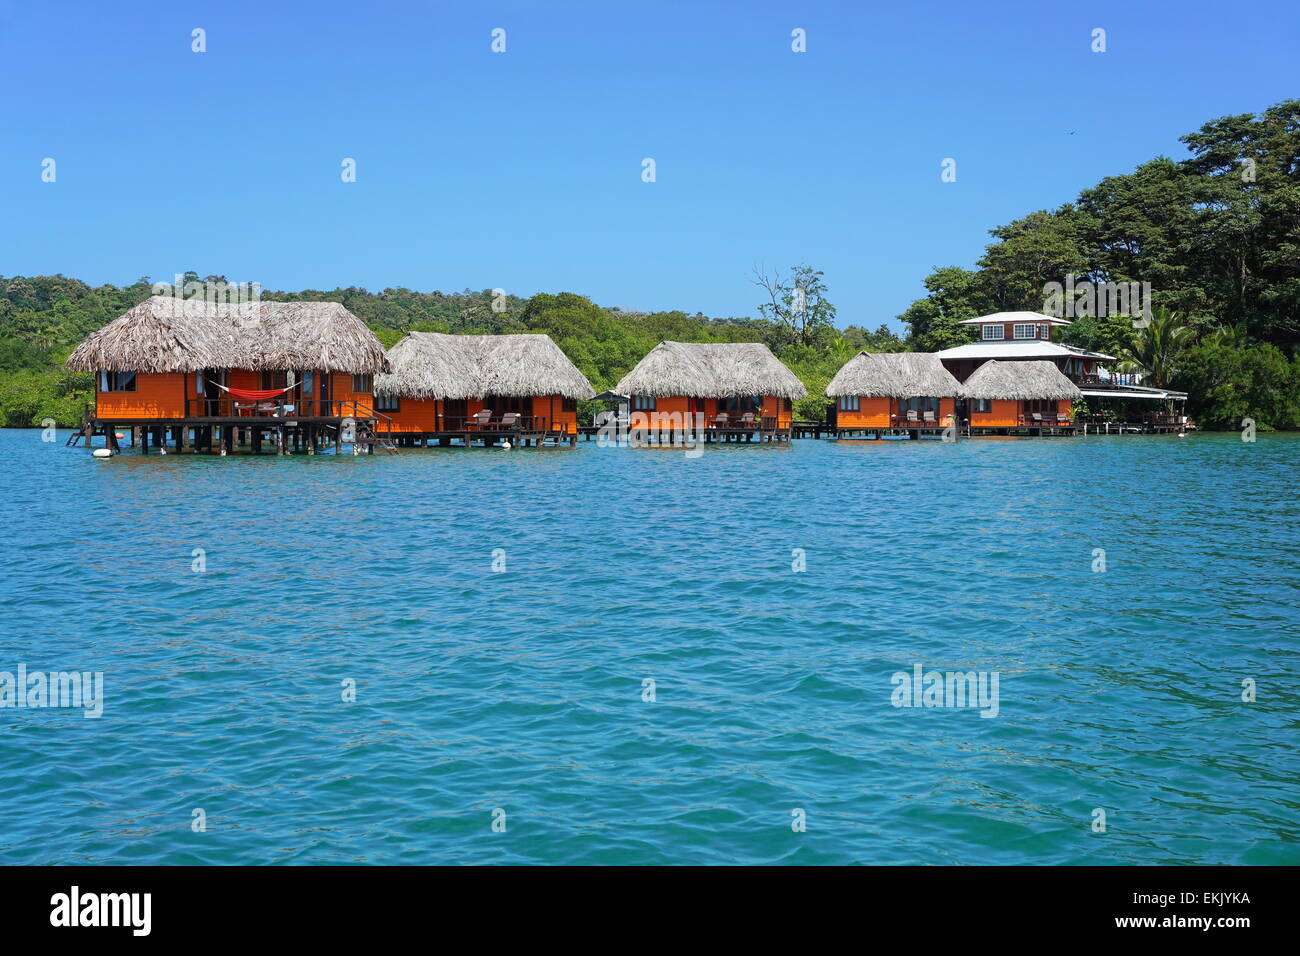 Resort tropicale sull'acqua con bungalow con tetto in paglia, Bocas del Toro, Panama America Centrale Foto Stock